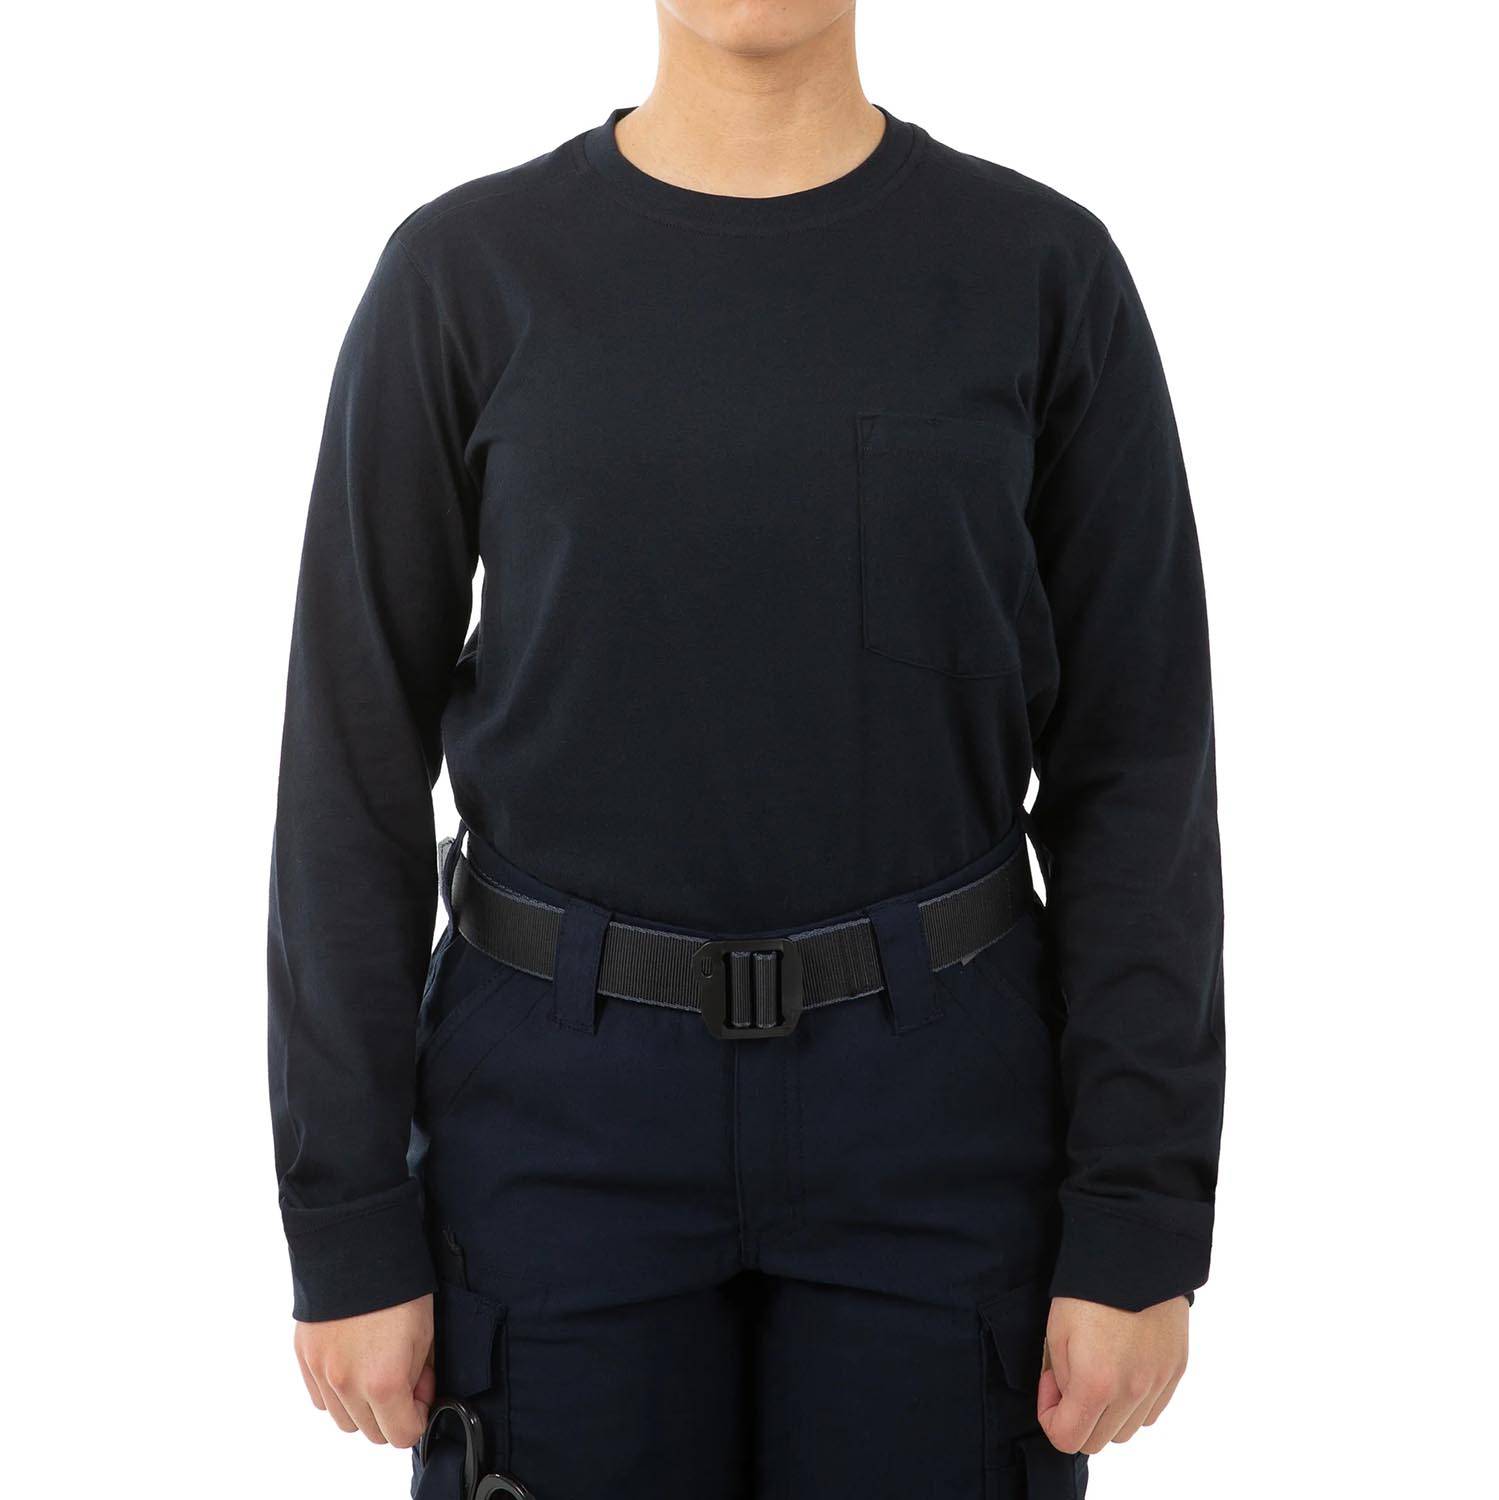 First Tactical Women's Tactix Cotton Long Sleeve T-Shirt